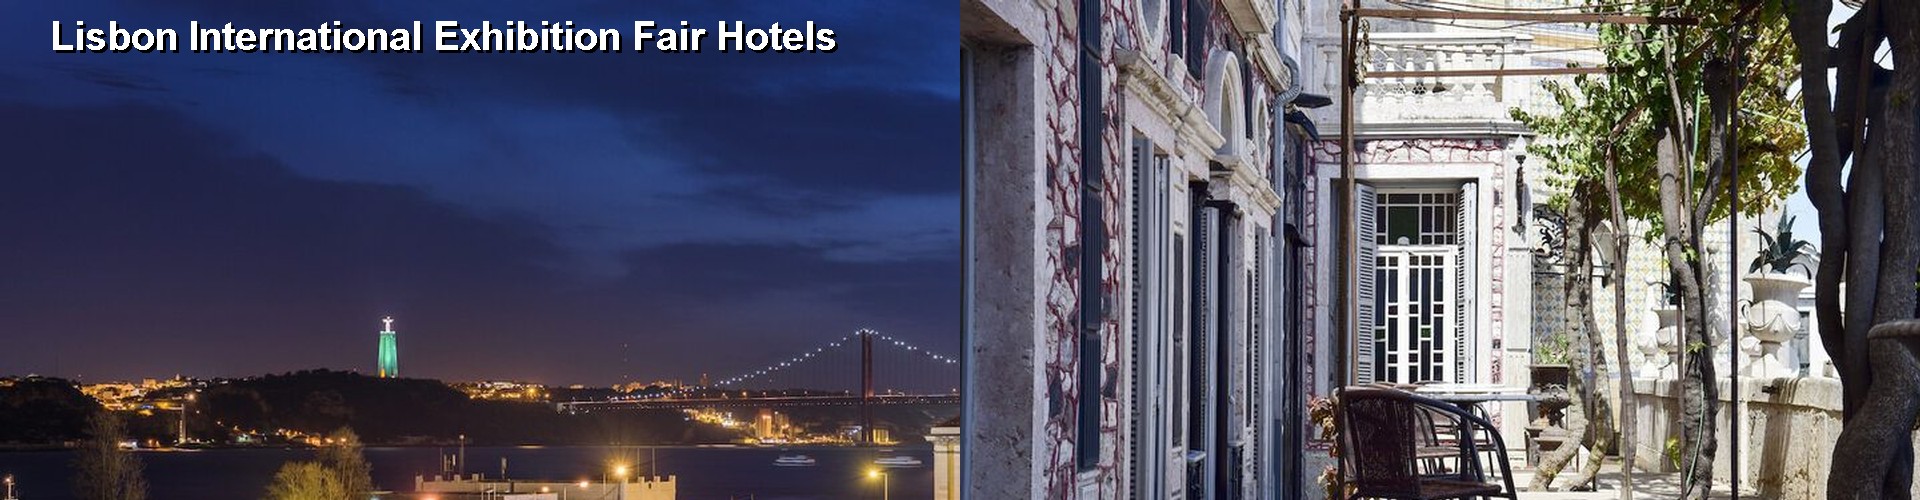 5 Best Hotels near Lisbon International Exhibition Fair